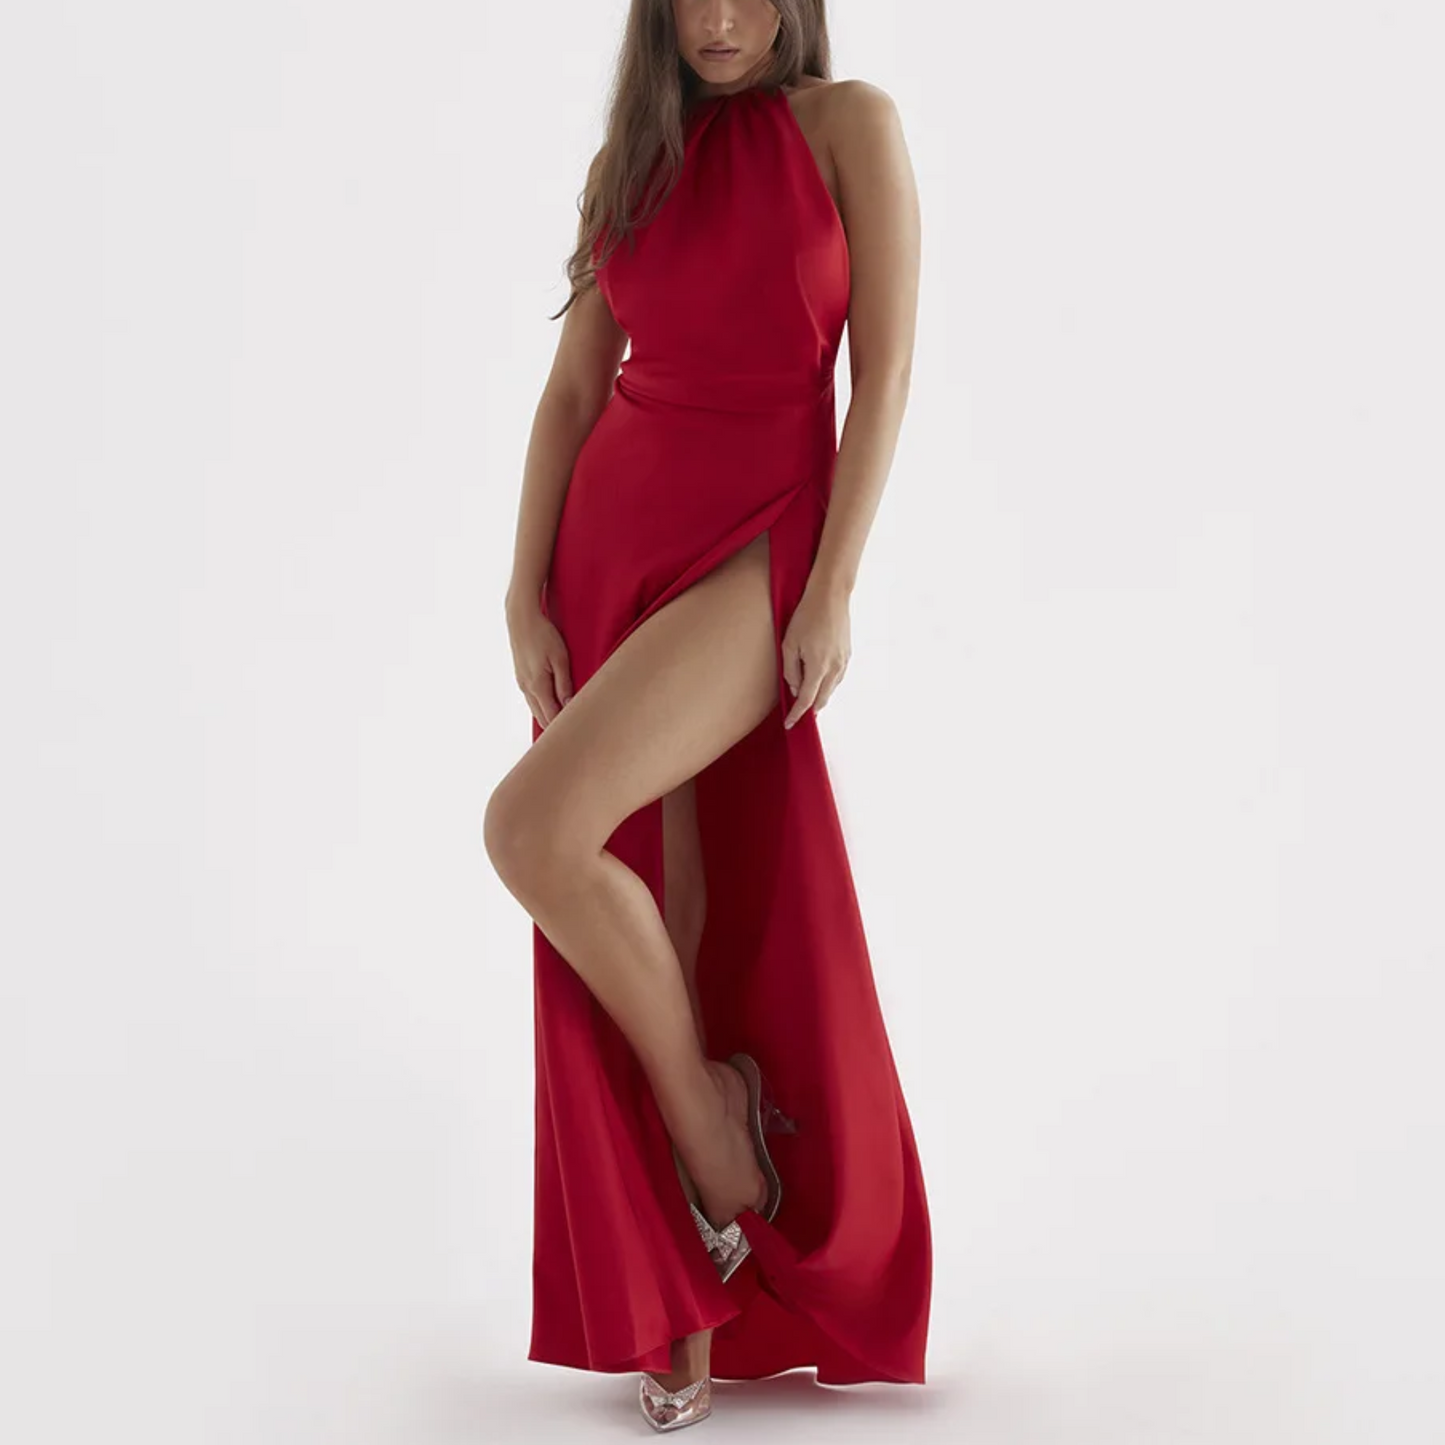 Sarita - Red Satin Backless Halter Neck Maxi Dress